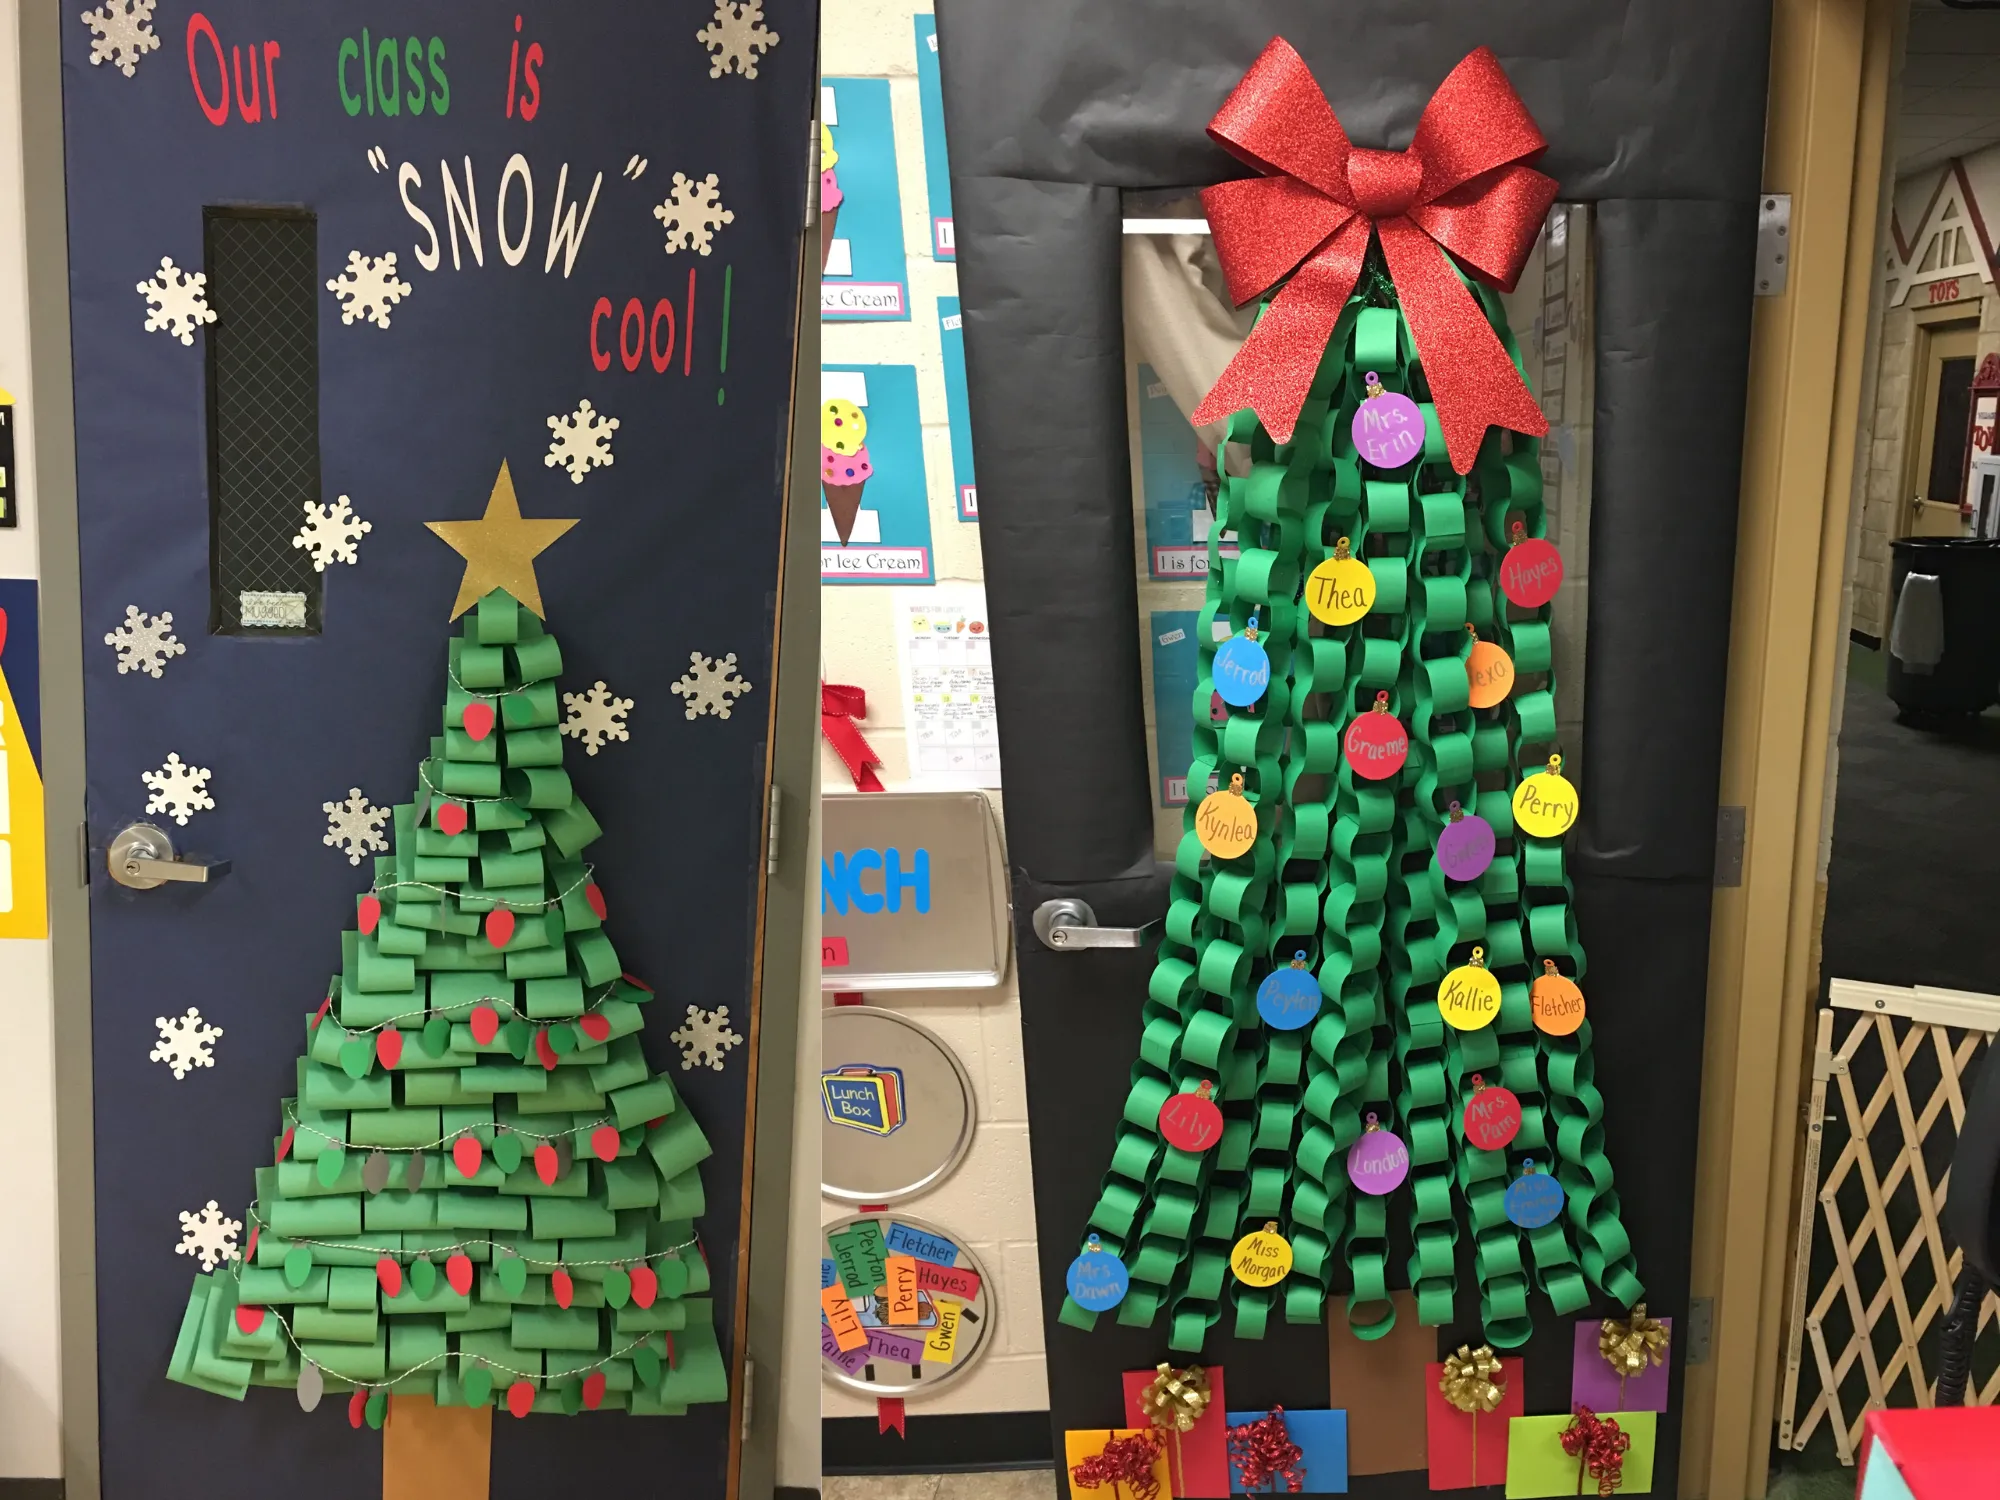 Trang trí cửa lớp học cho trẻ nhân dịp Giáng sinh bằng cách cắt dán hình cây thông Noel